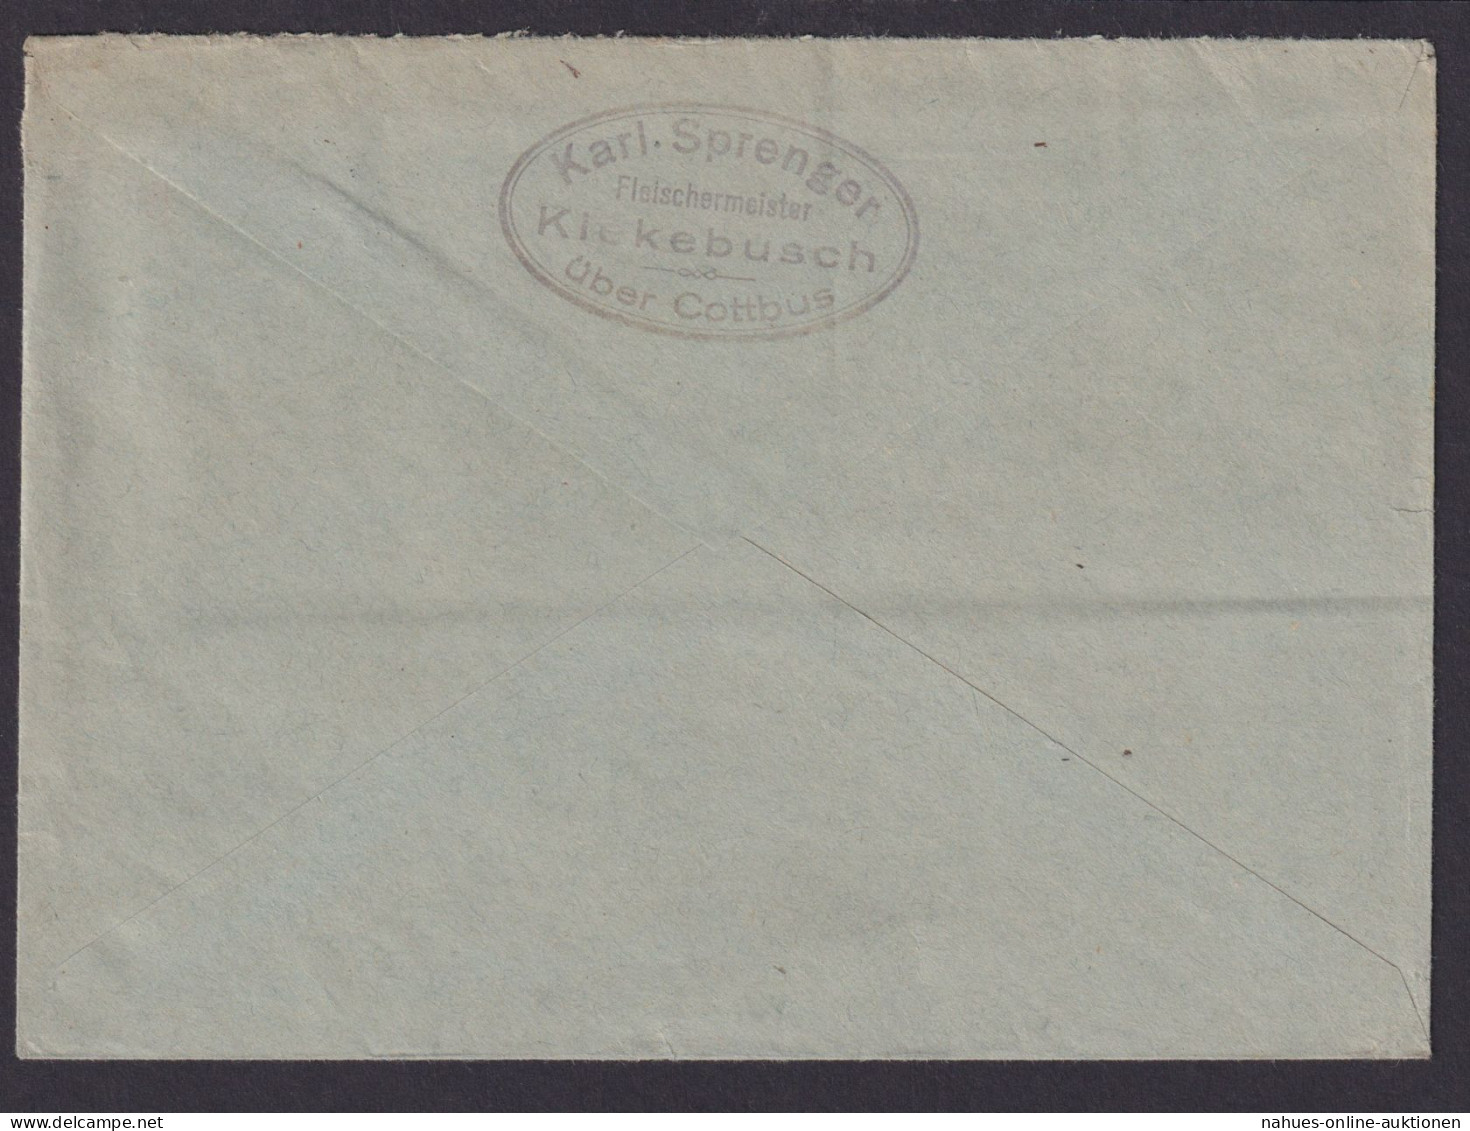 Kiekebusch über Cottbus Brandenburg Deutsches Reich Brief Landpoststempel N. - Lettres & Documents